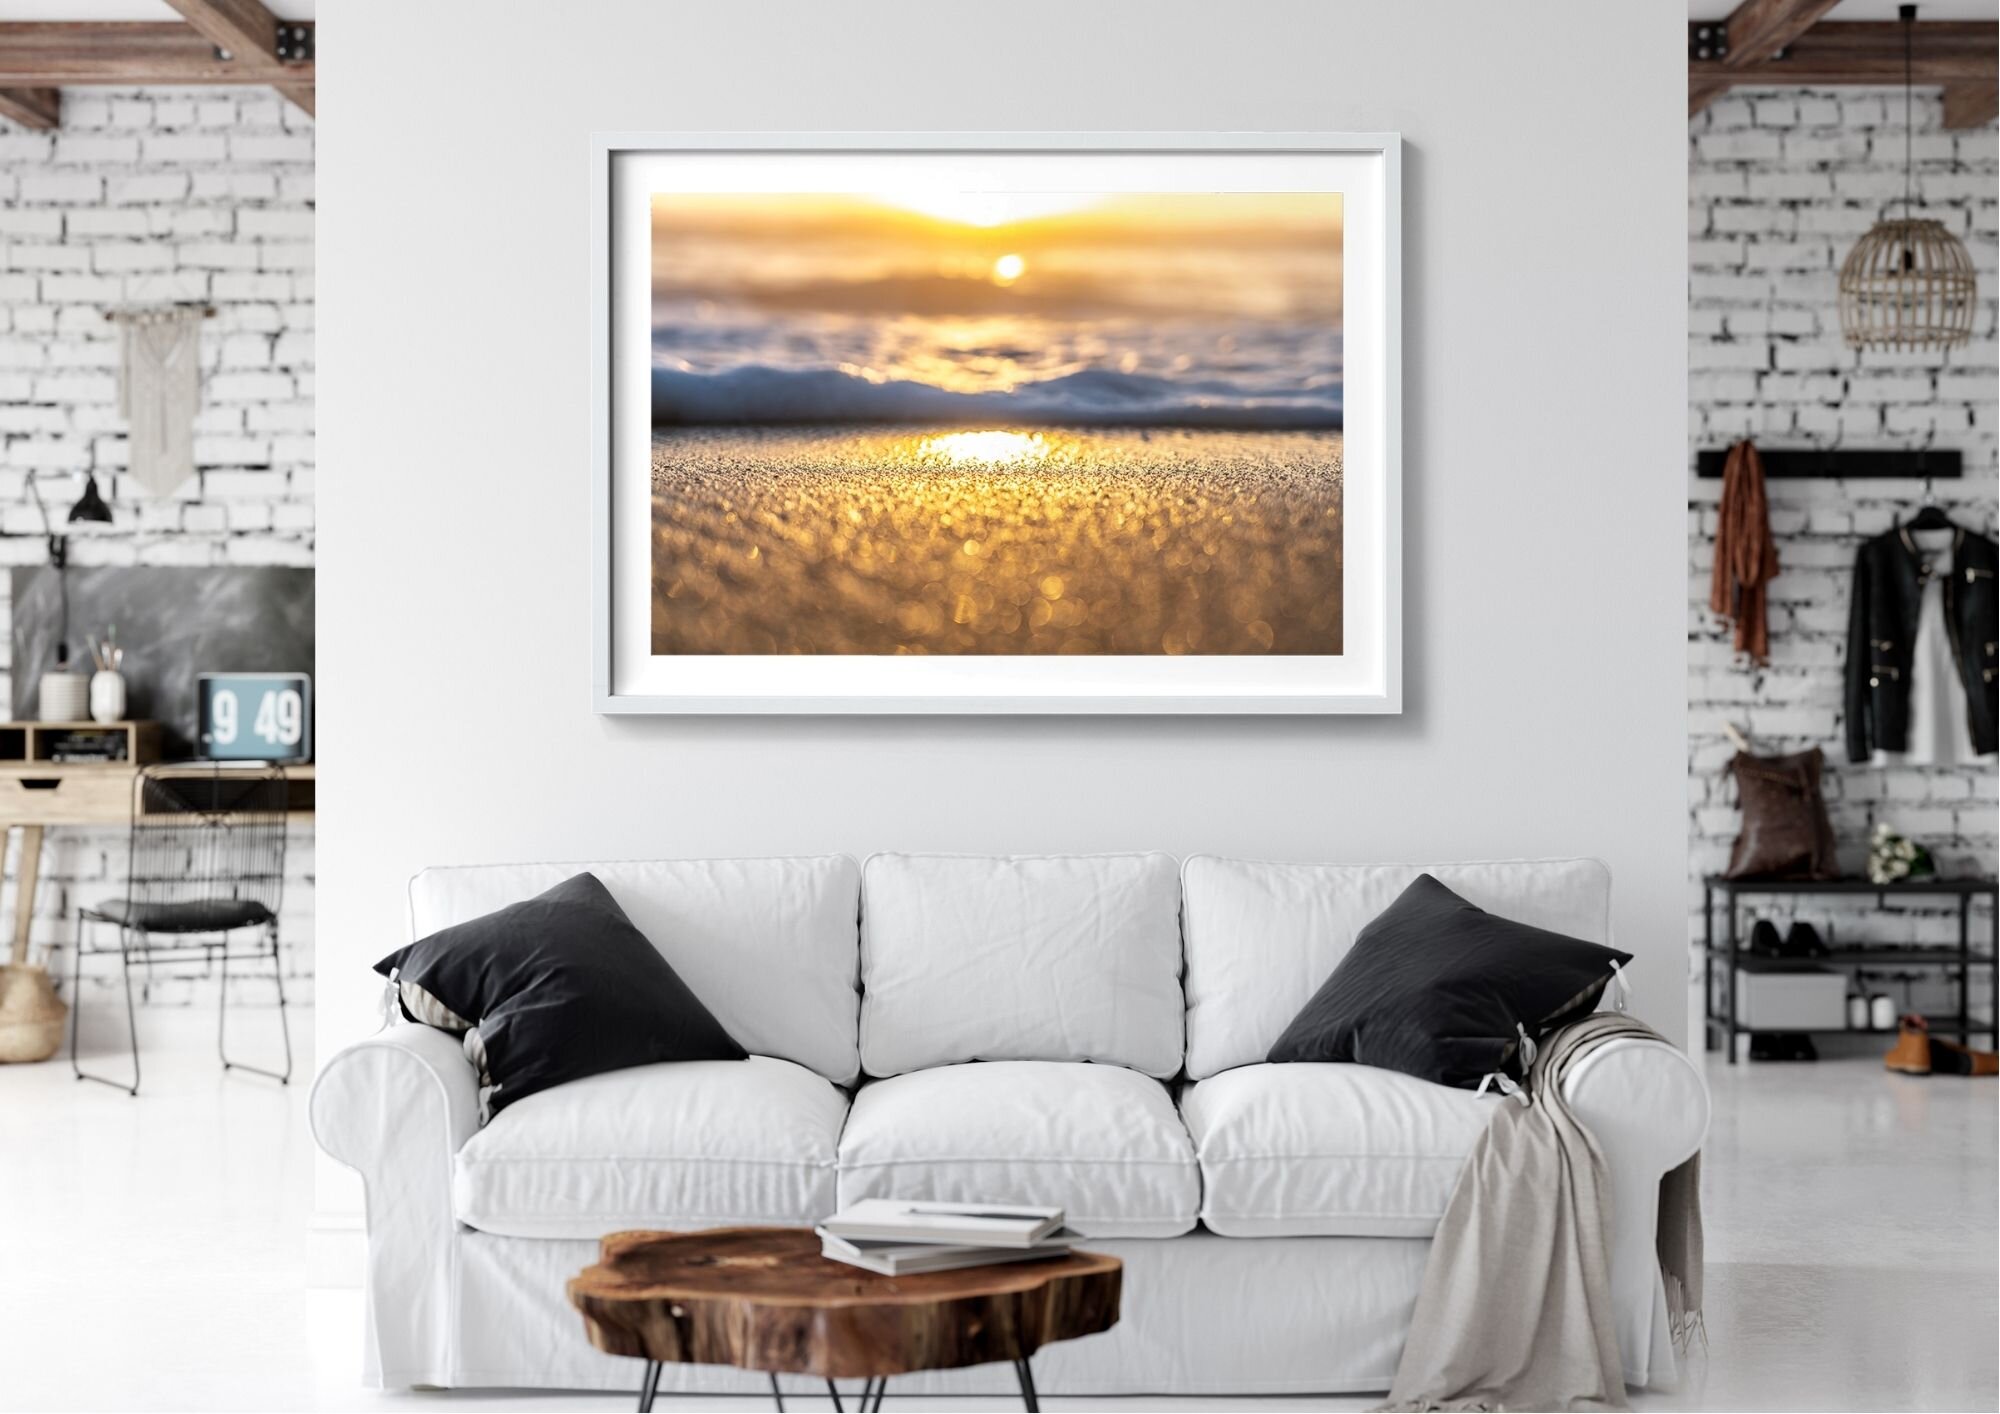 Bondi Beach Prints and Apparel — Bondi Beach prints